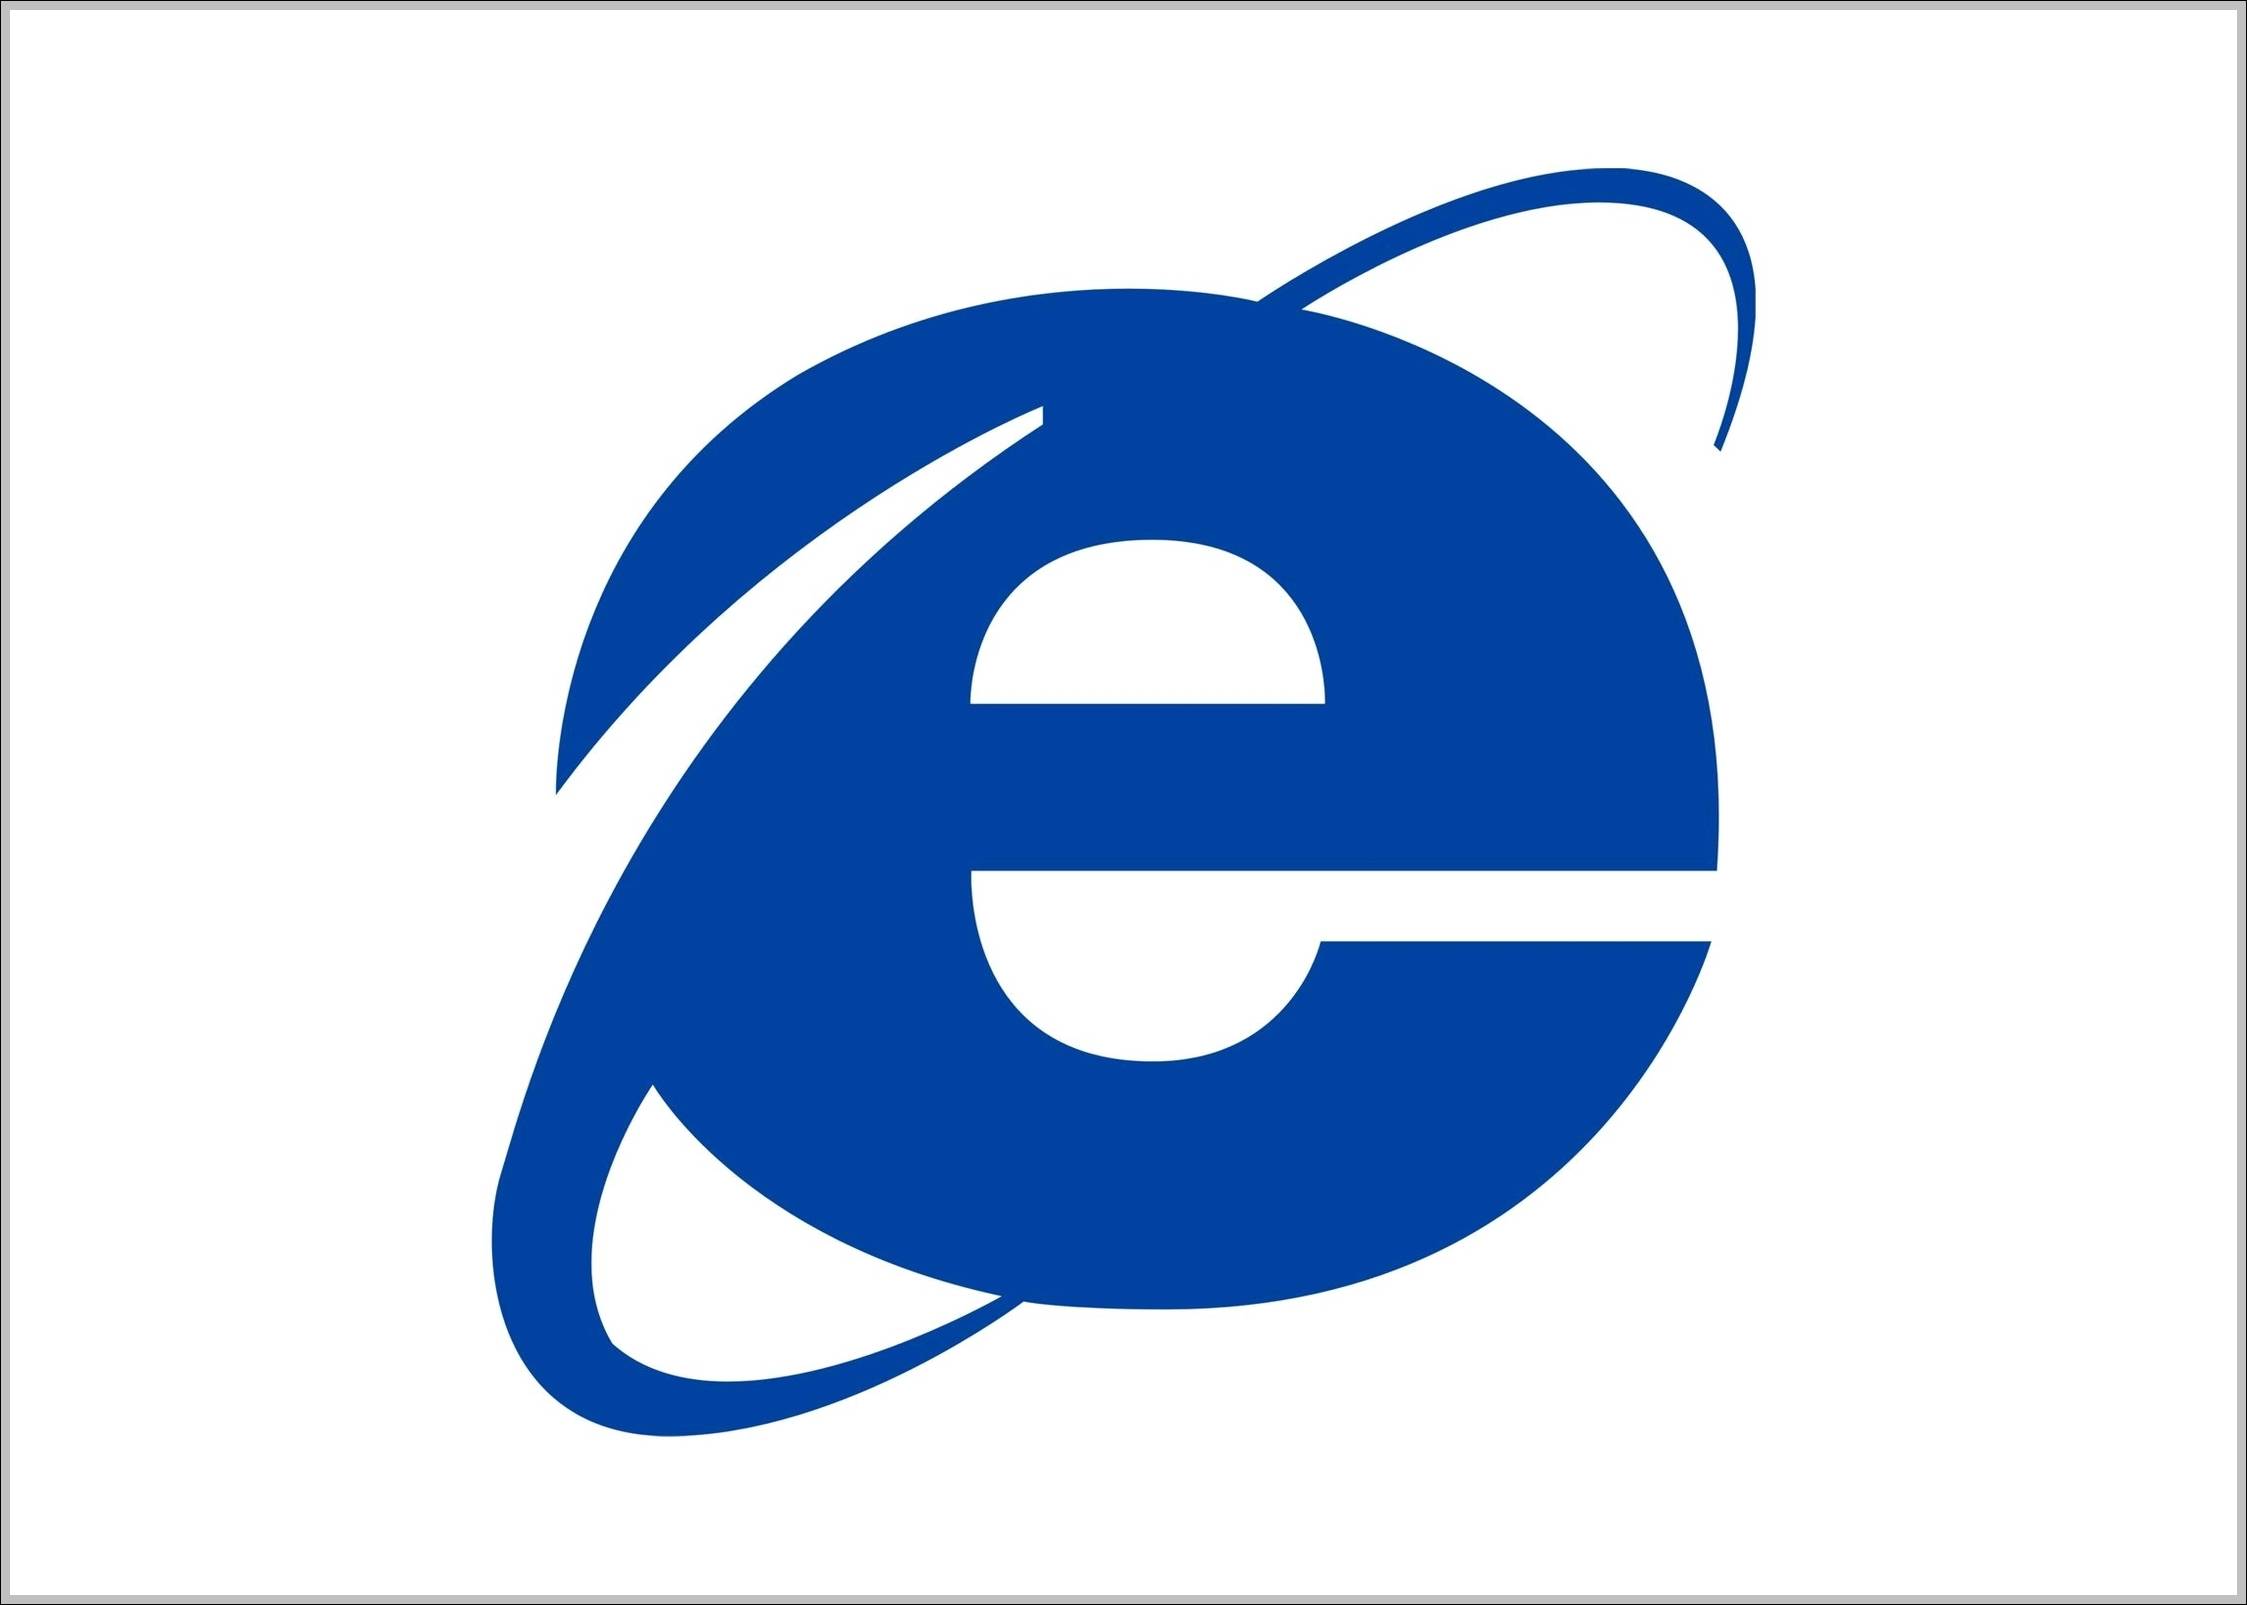 Old Internet Logo - Internet Explorer logo old | Logo Sign - Logos, Signs, Symbols ...